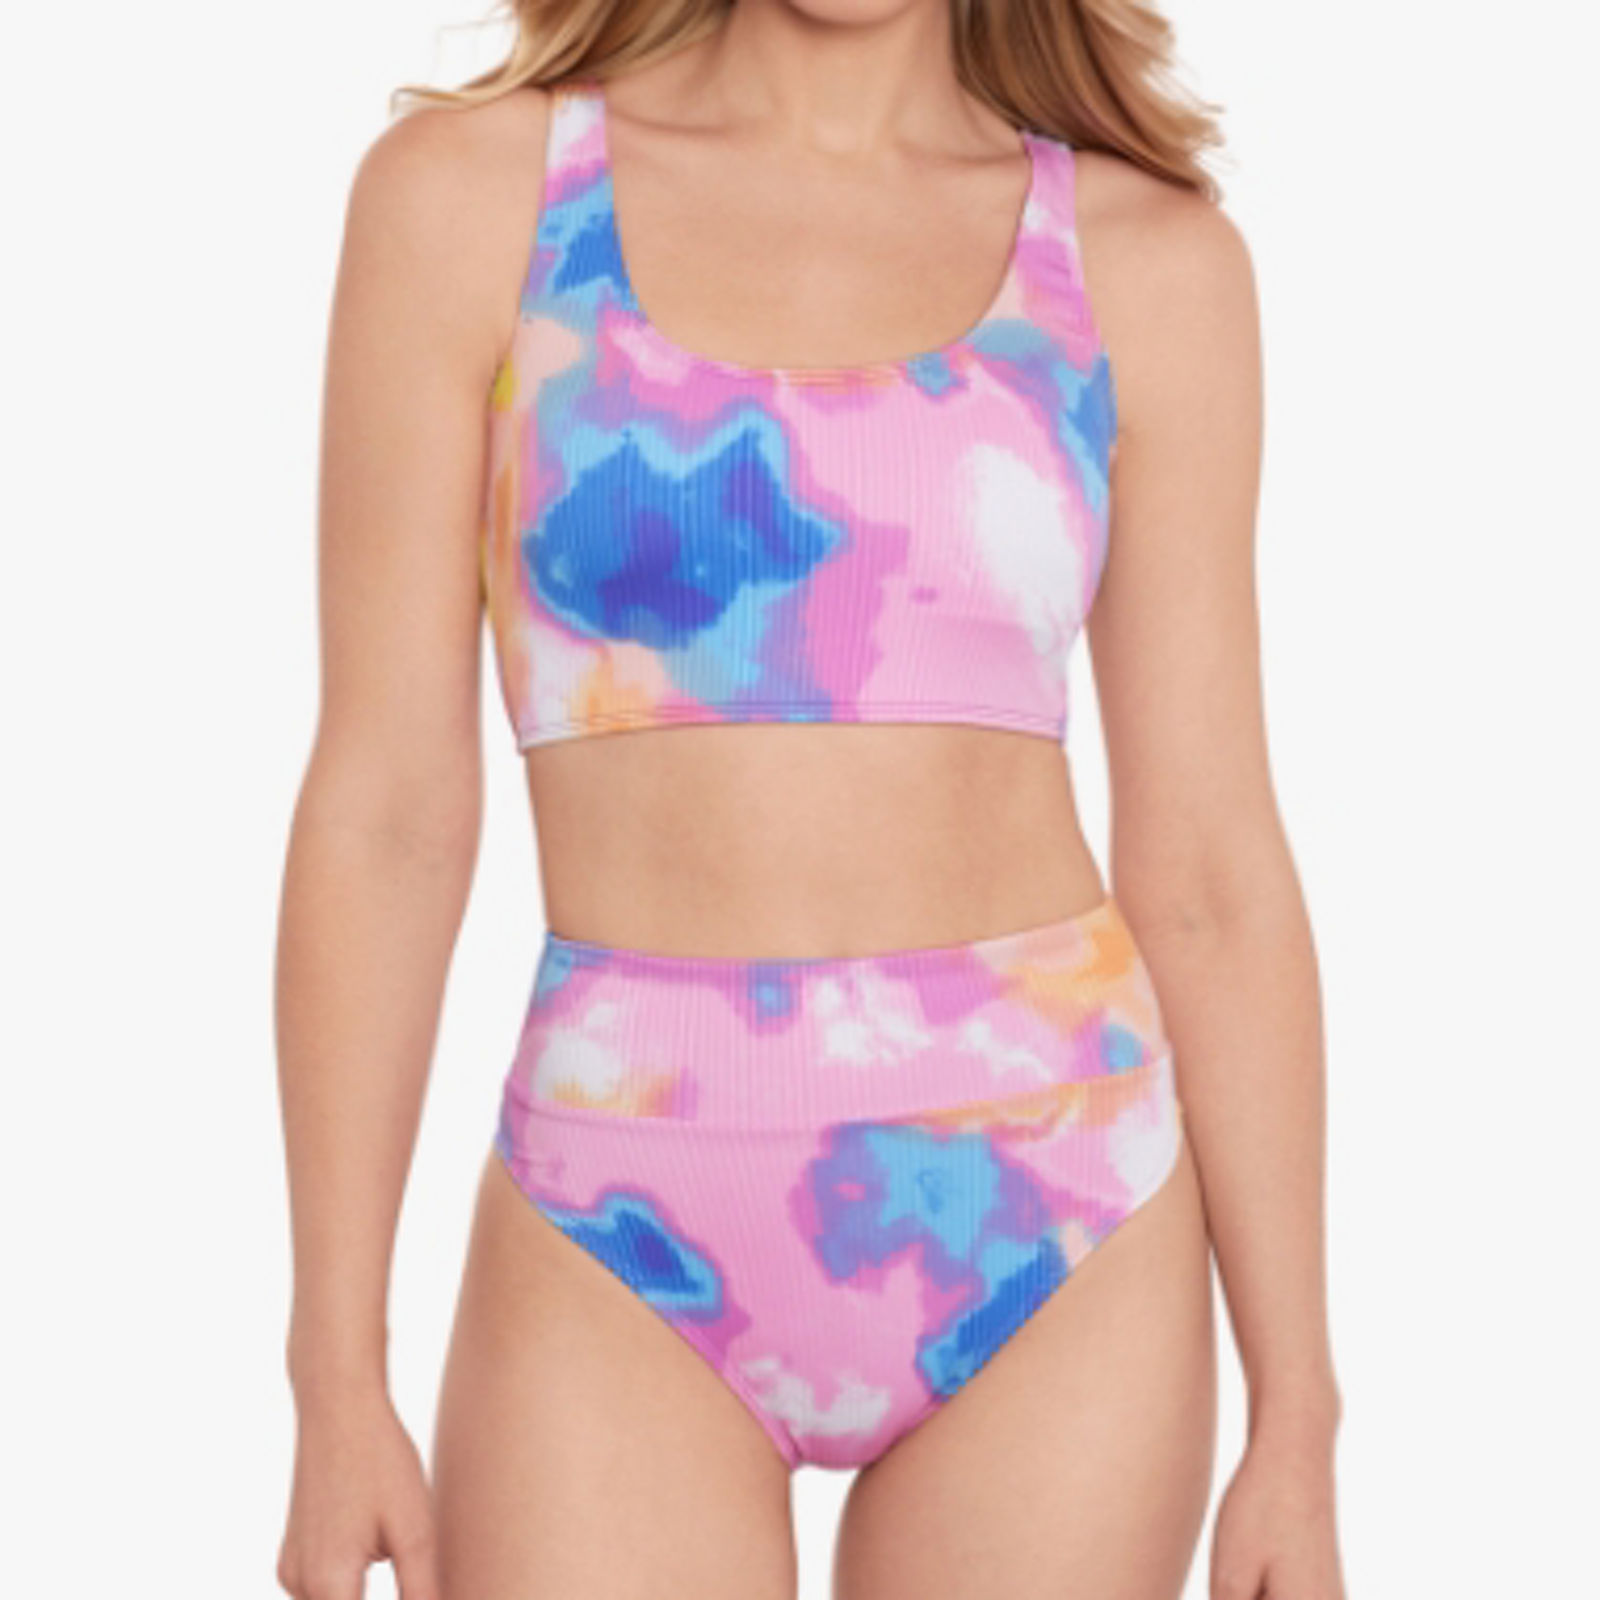 Full Bust Support Bra Size Women's Swimsuits & Swimwear - Macy's